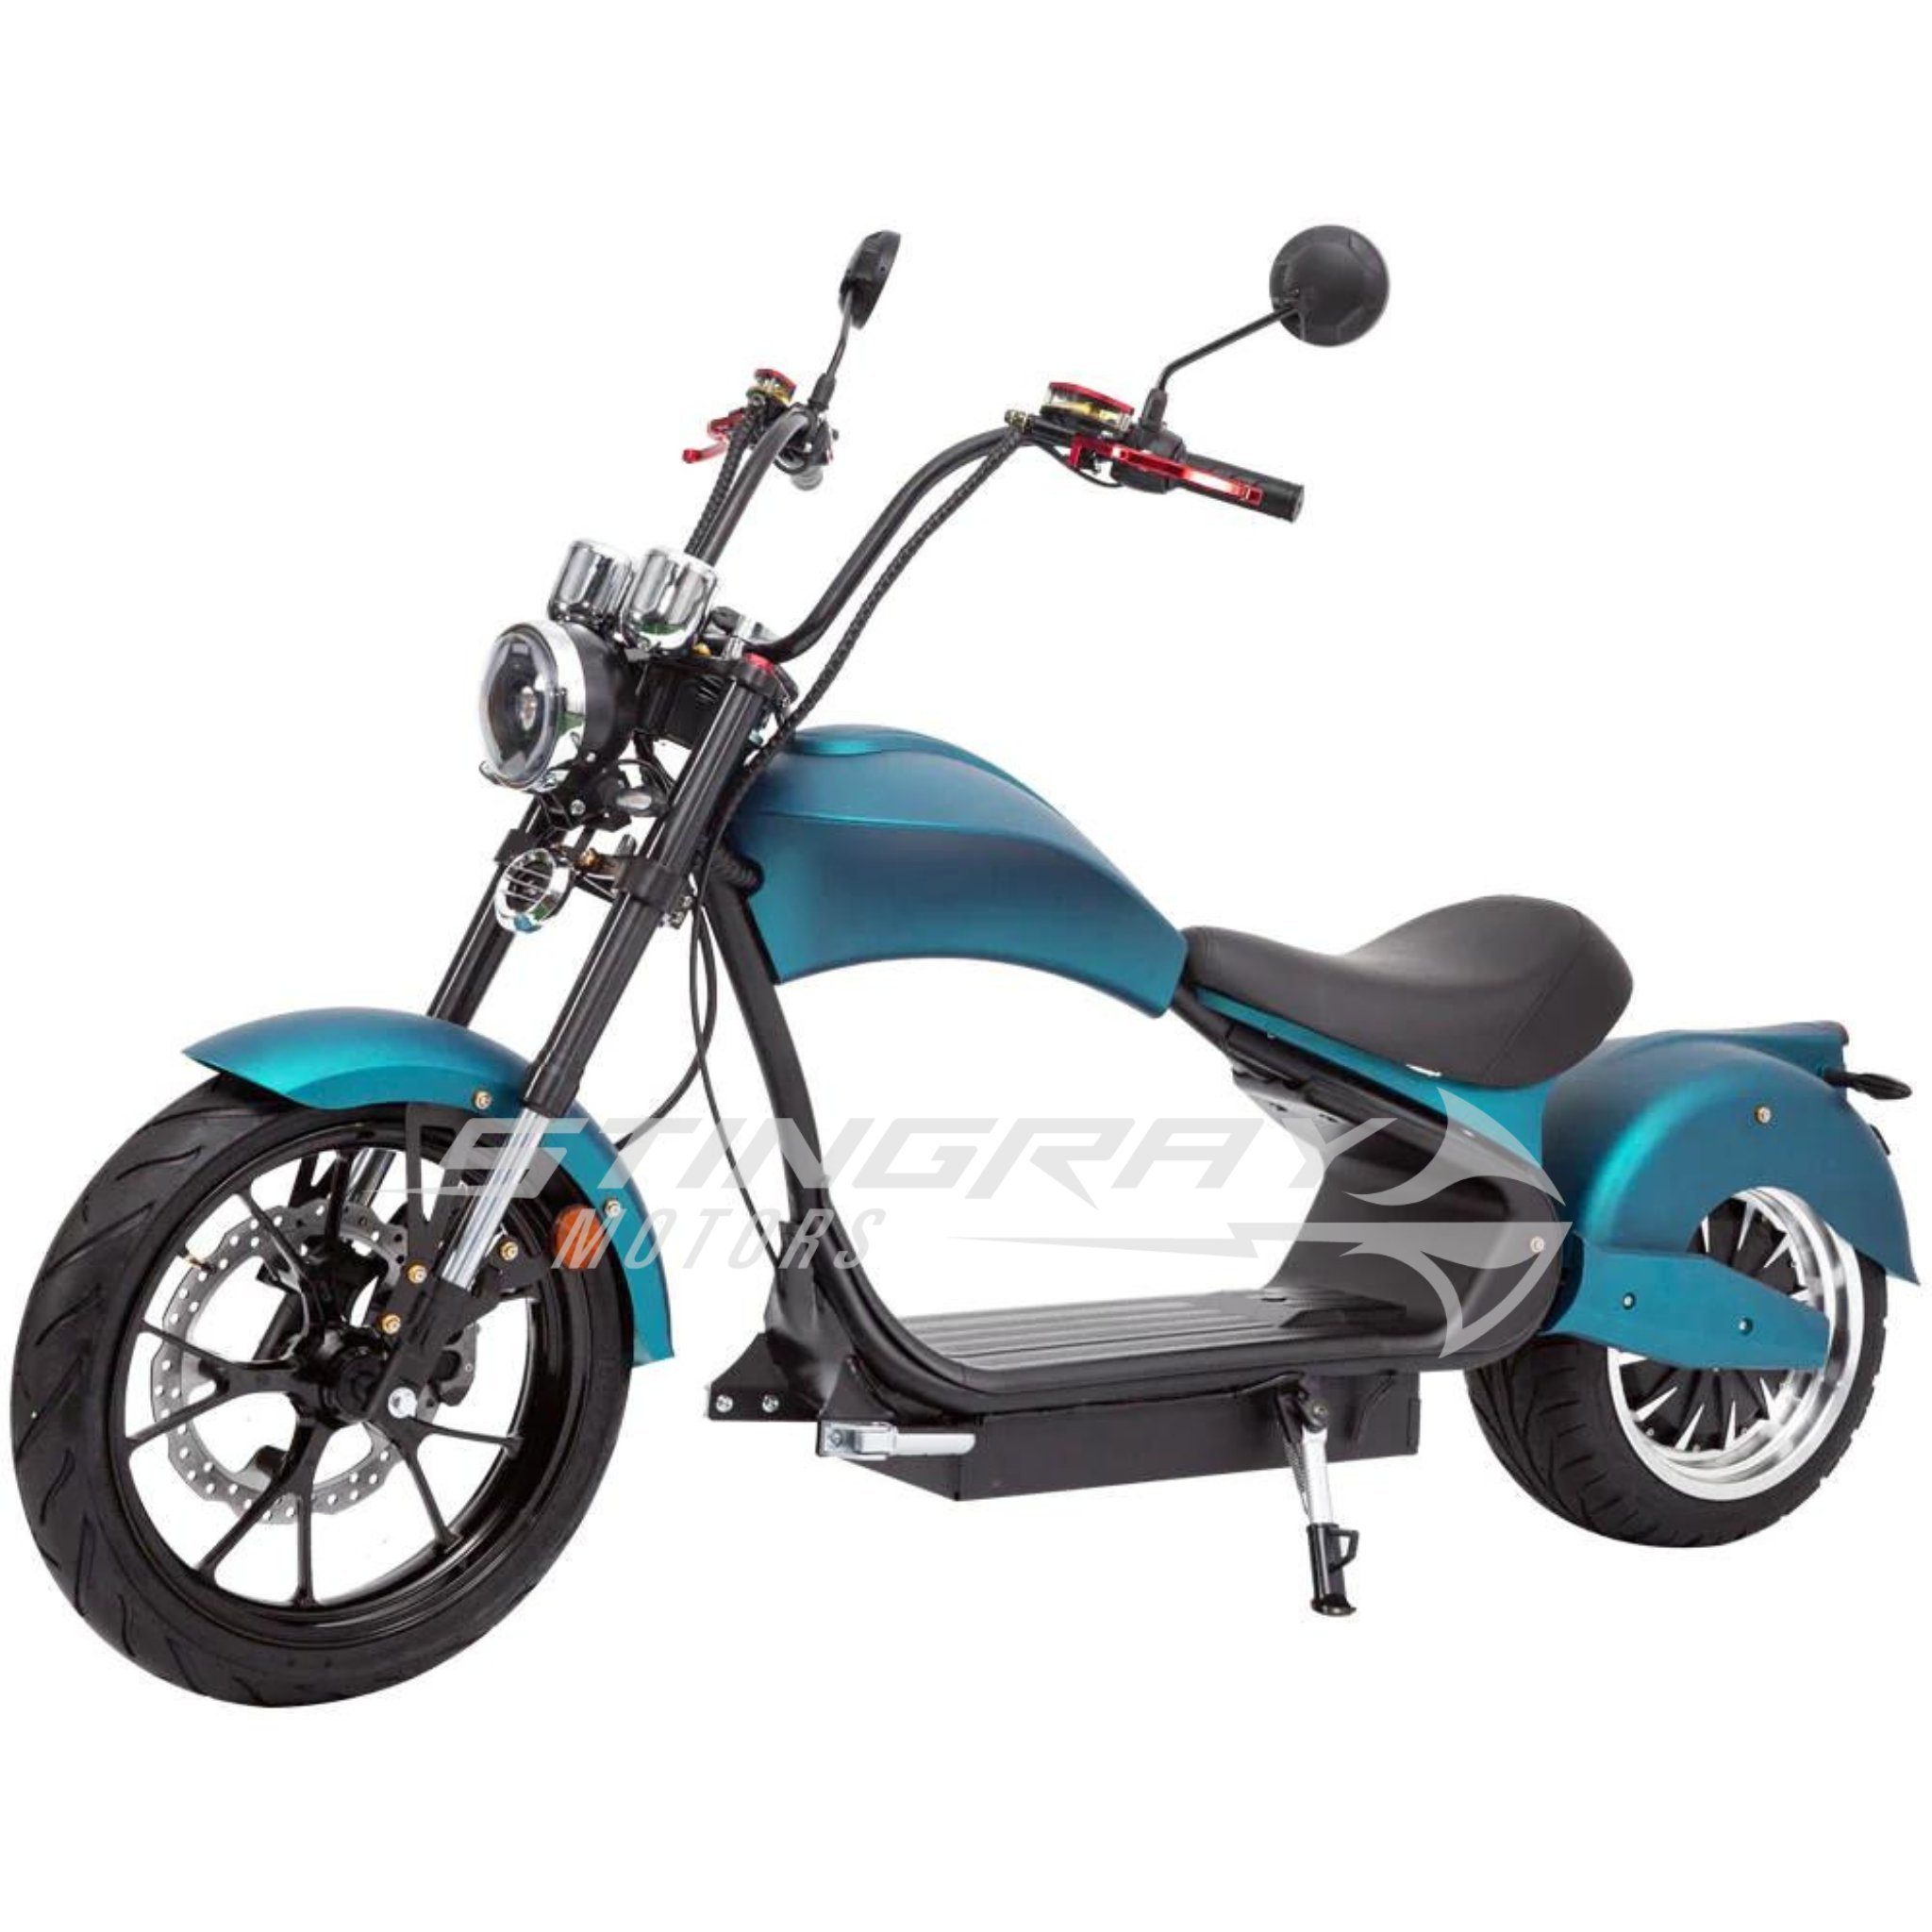 Stingray Motors E-Motorroller Elektroroller - E - km/h 4500 Chopper 50 Roller - km/h 4500,00 W, Carbon Harley Watt 50 MH3